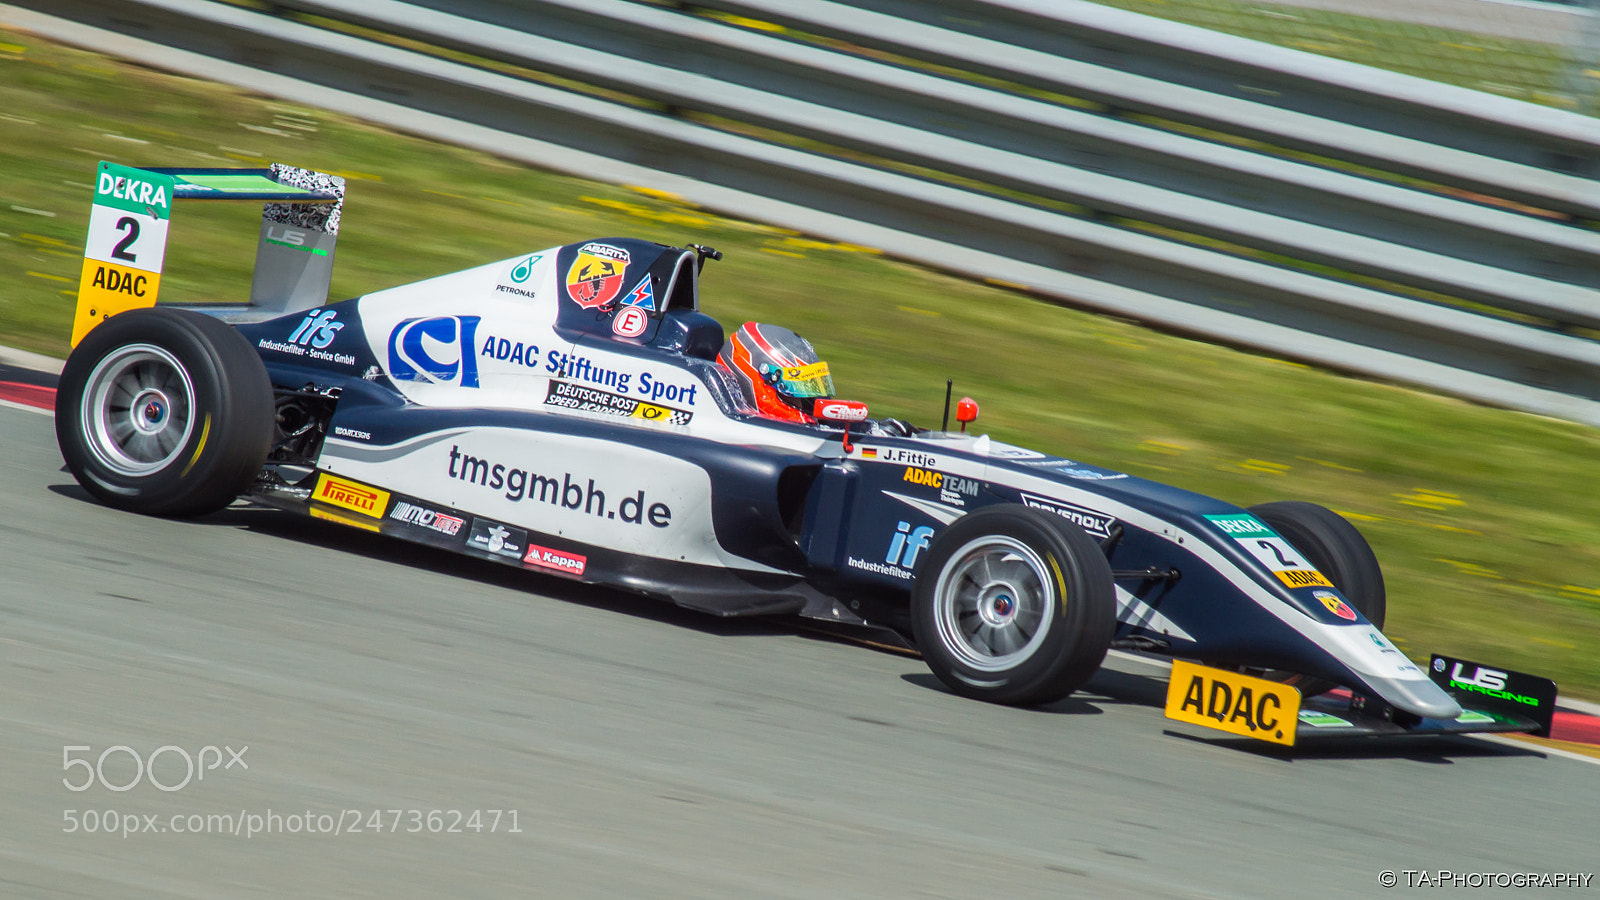 Sony SLT-A58 sample photo. Formula 4 racecar photography